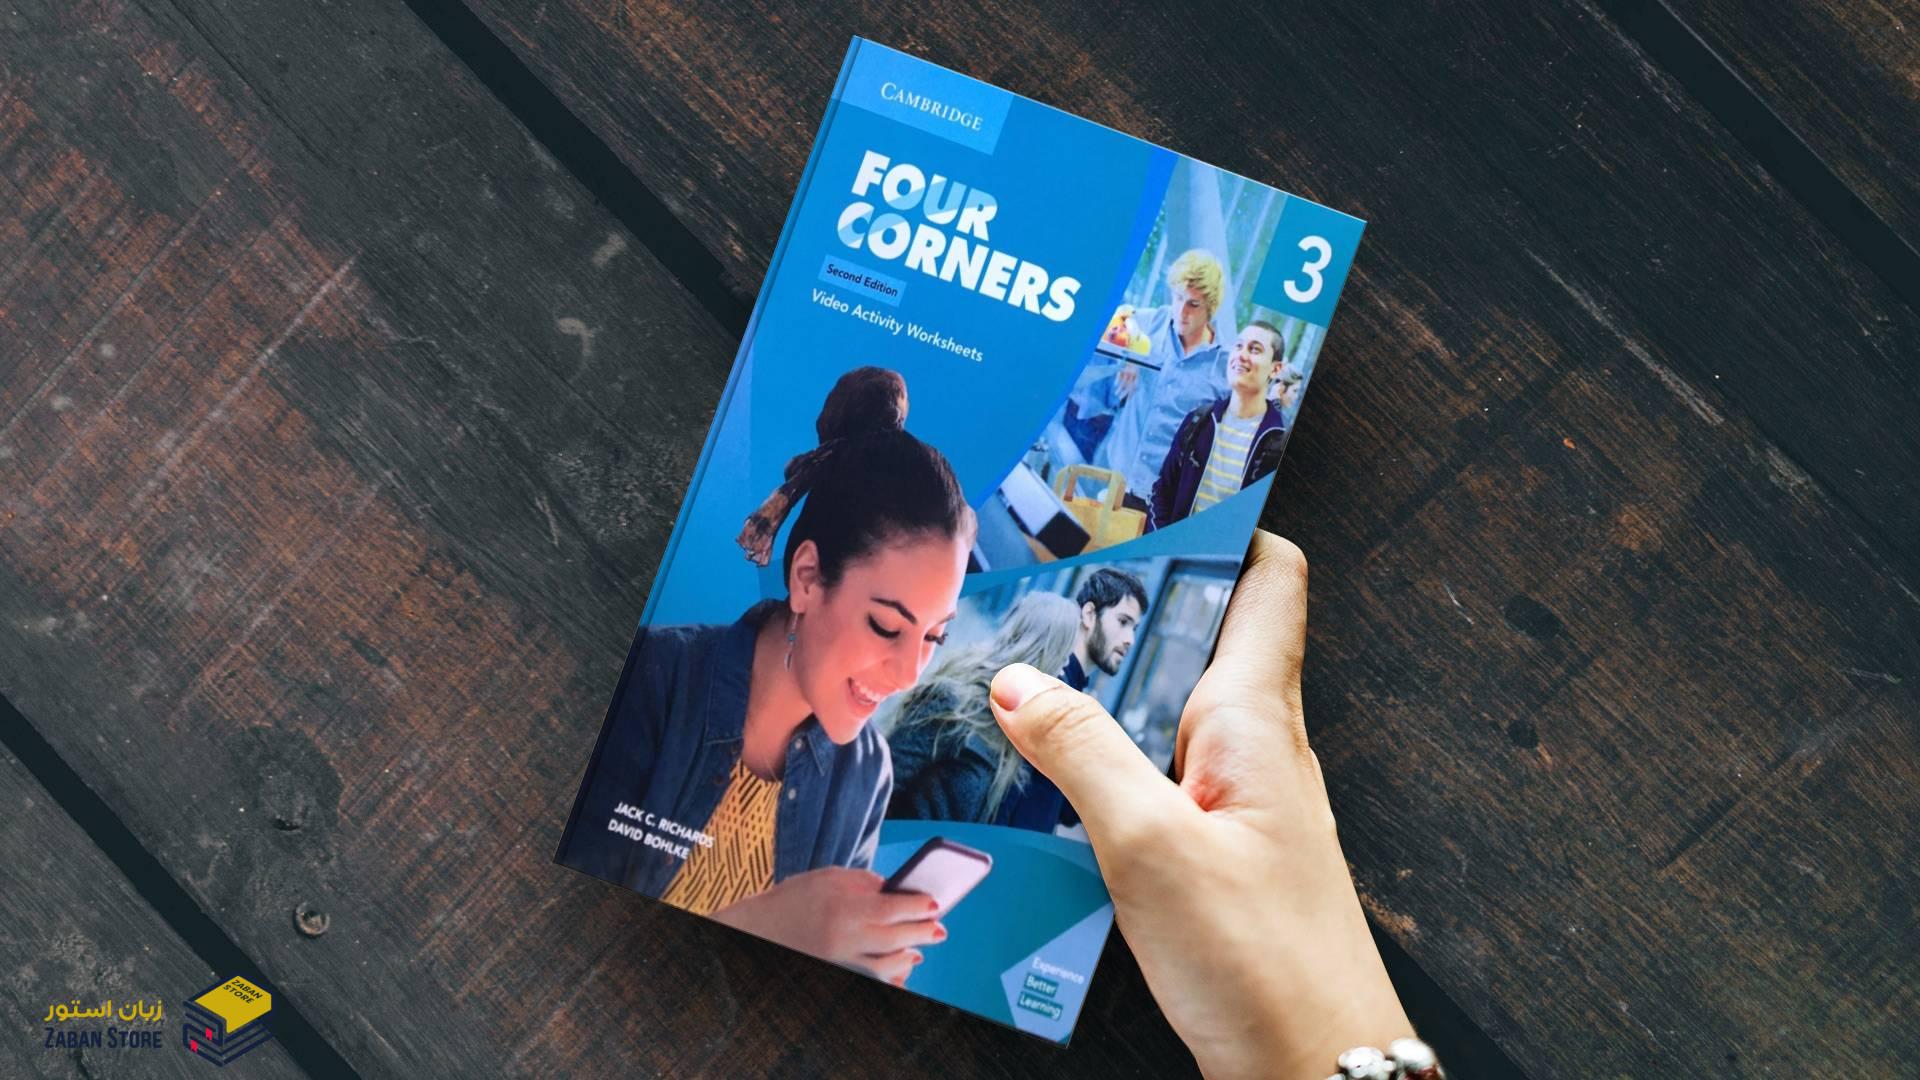 خرید کتاب زبان | کتاب زبان اصلی | Four Corners 3 Video Activity Worksheets Second Edition | کتاب فیلم فور کورنرز سه ویرایش دوم